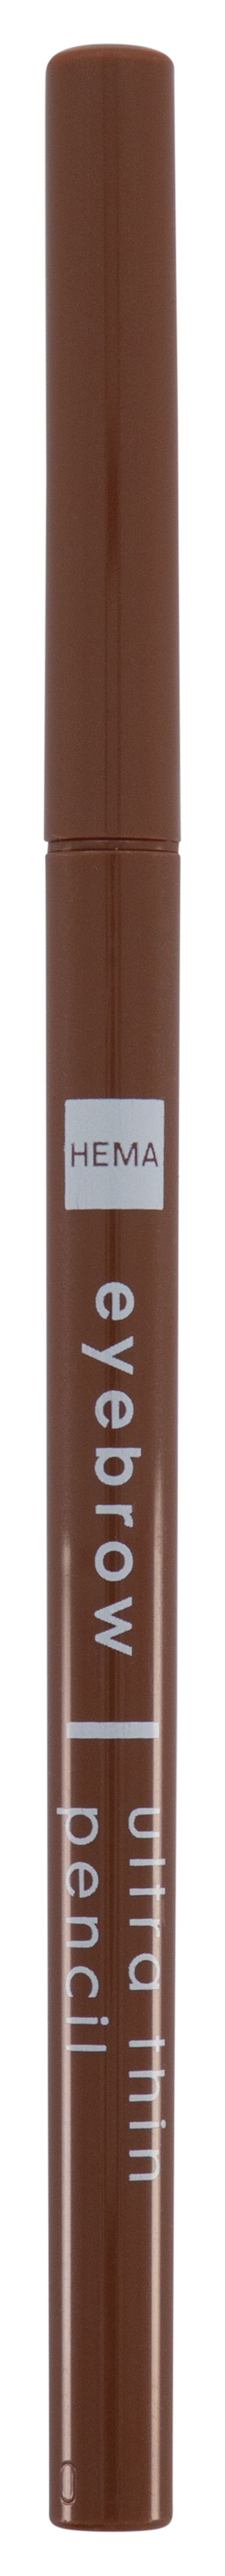 crayon sourcils extra fin marron moyen - 11214124 - HEMA